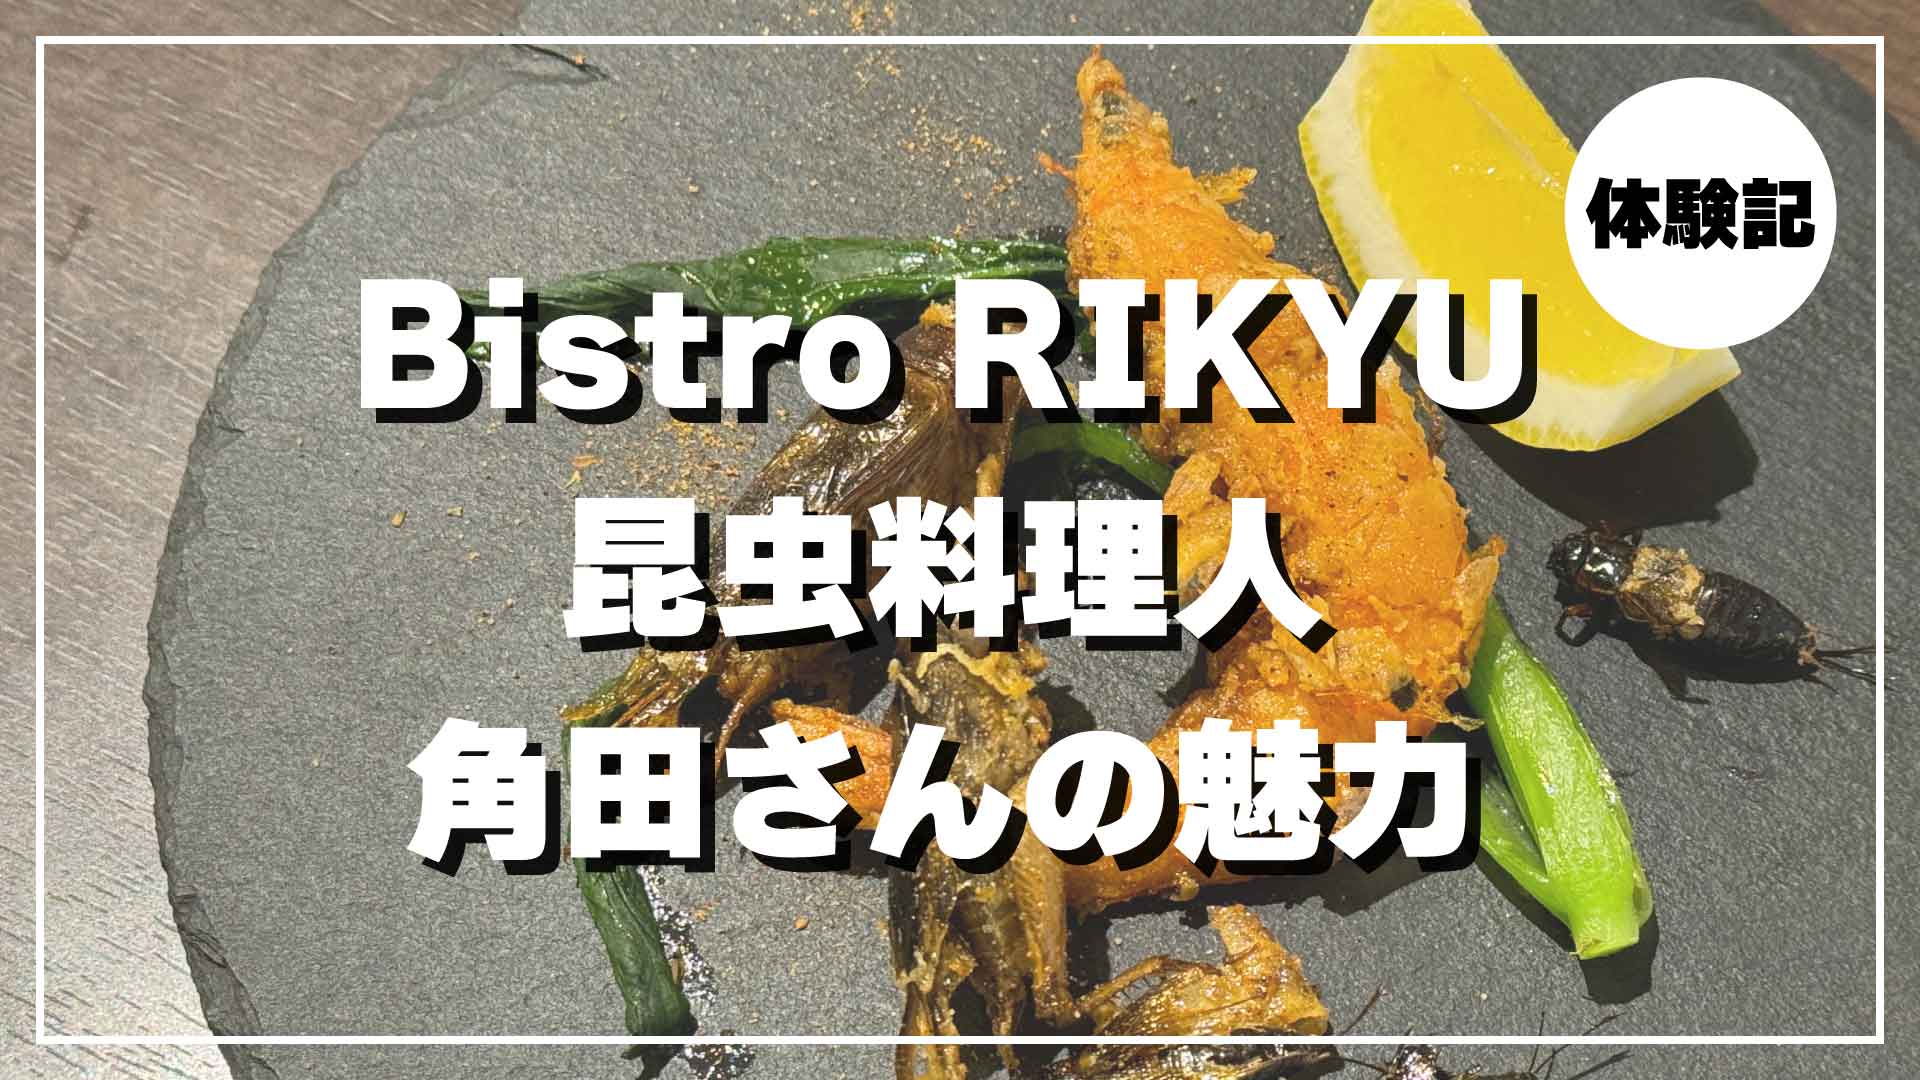 昆虫料理人 角田健一 Bistro RIKYU 体験記 昆虫食フルコース 潜入レポート